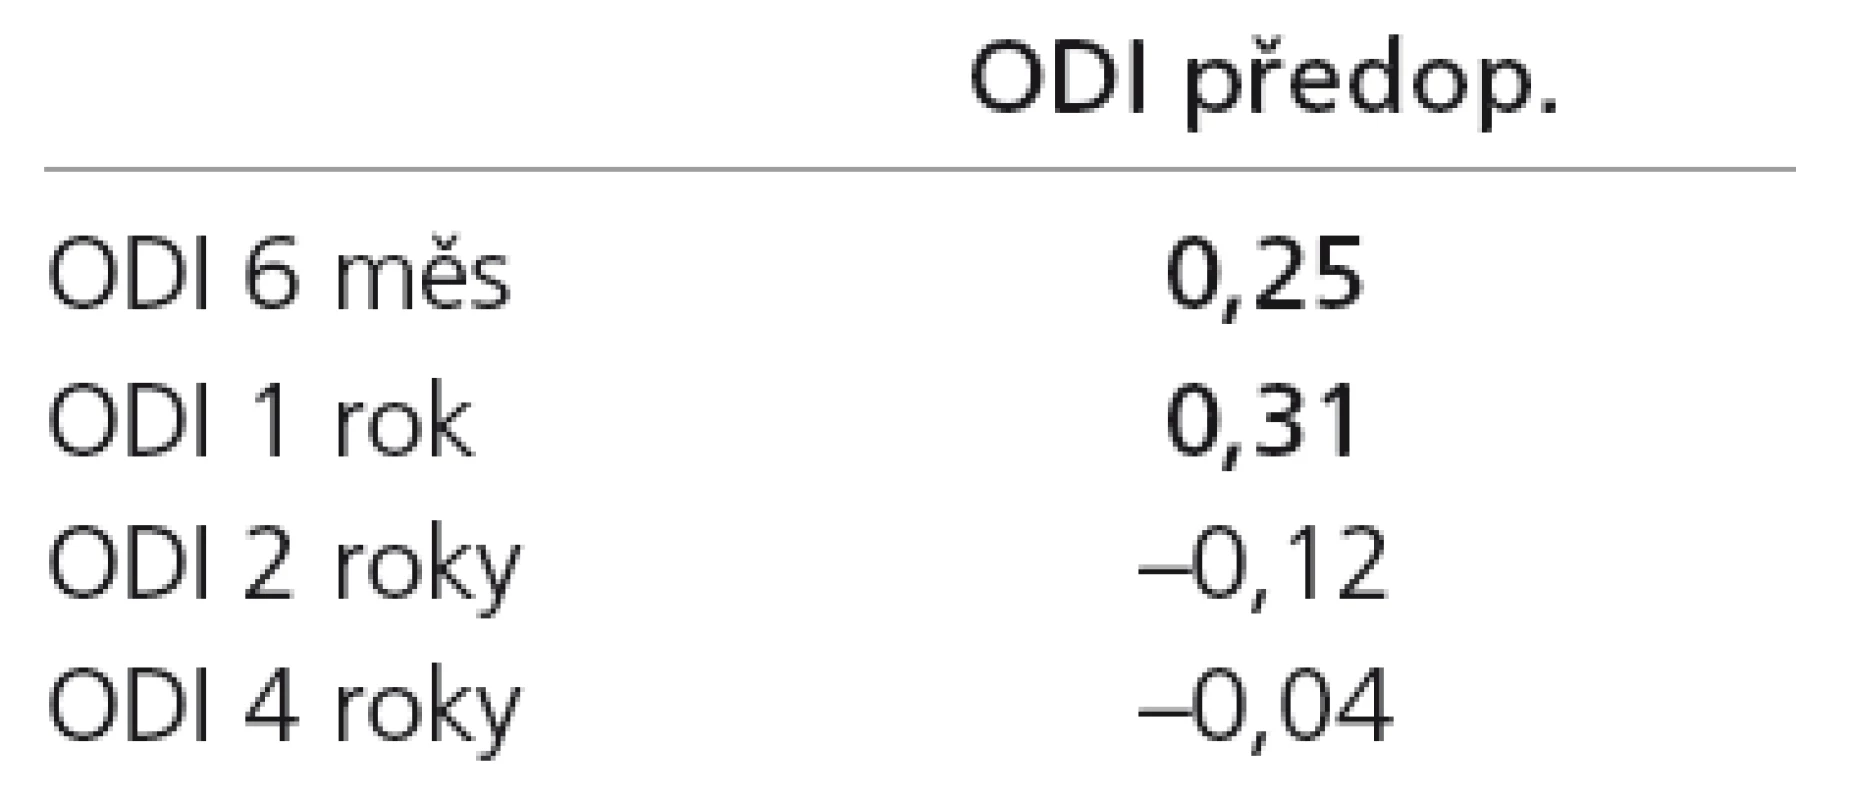 Tabulka Pearsonových korelačních koeficientů mezi předoperačními hodnotami a jednotlivými pooperačními kontrolami na škále ODI. Tučně zvýrazněné jsou statisticky významné korelace.